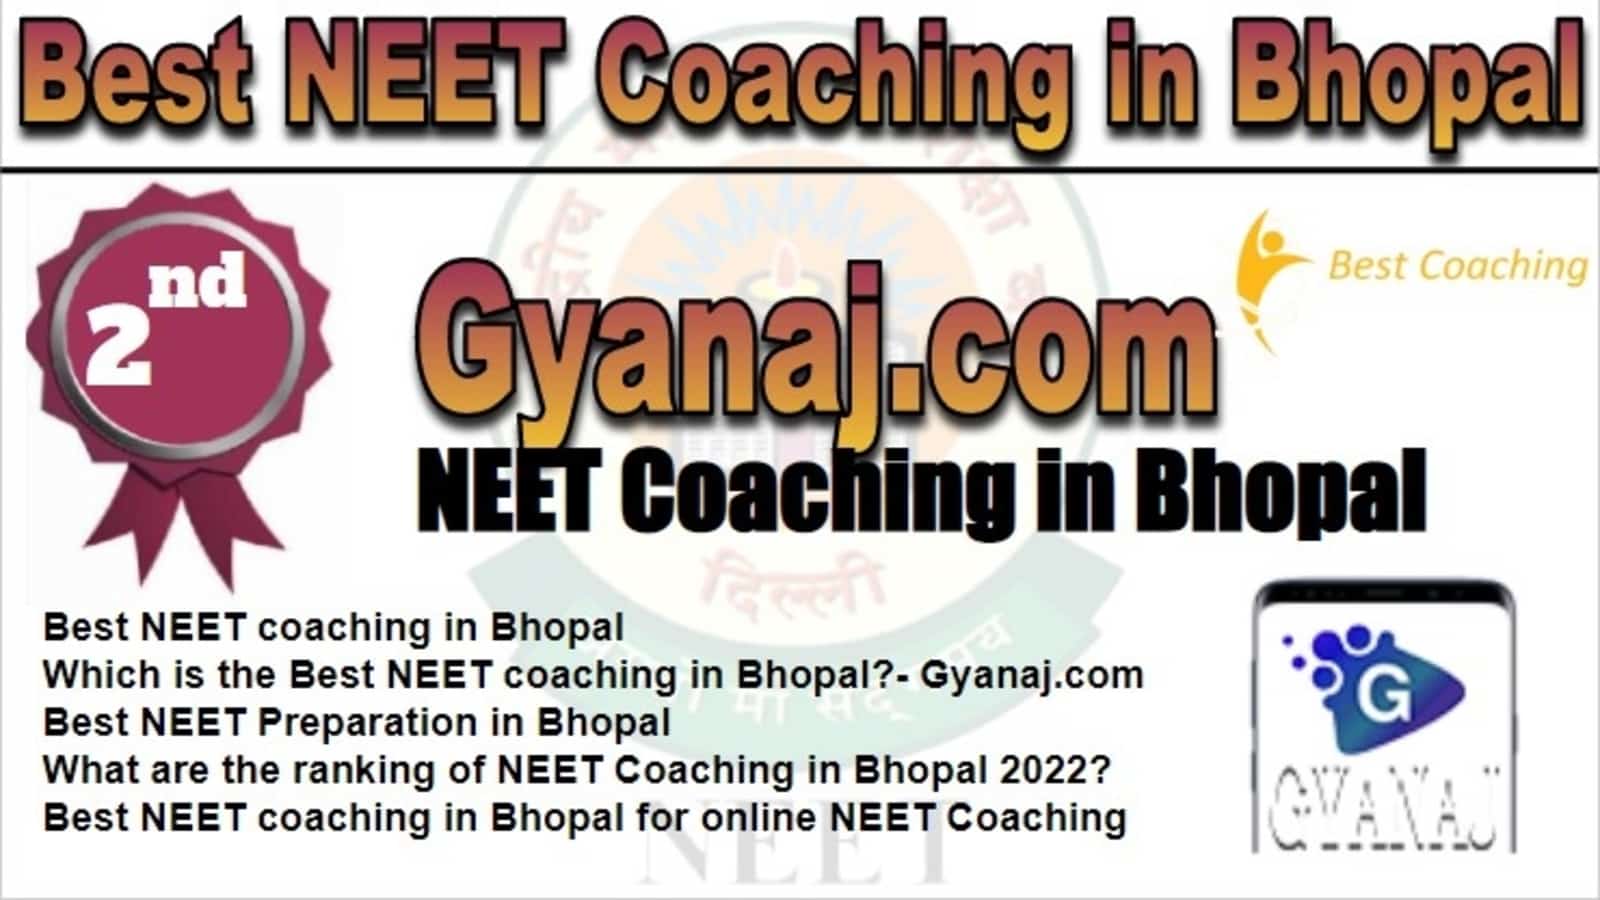 Rank 2 Best NEET Coaching in Bhopal